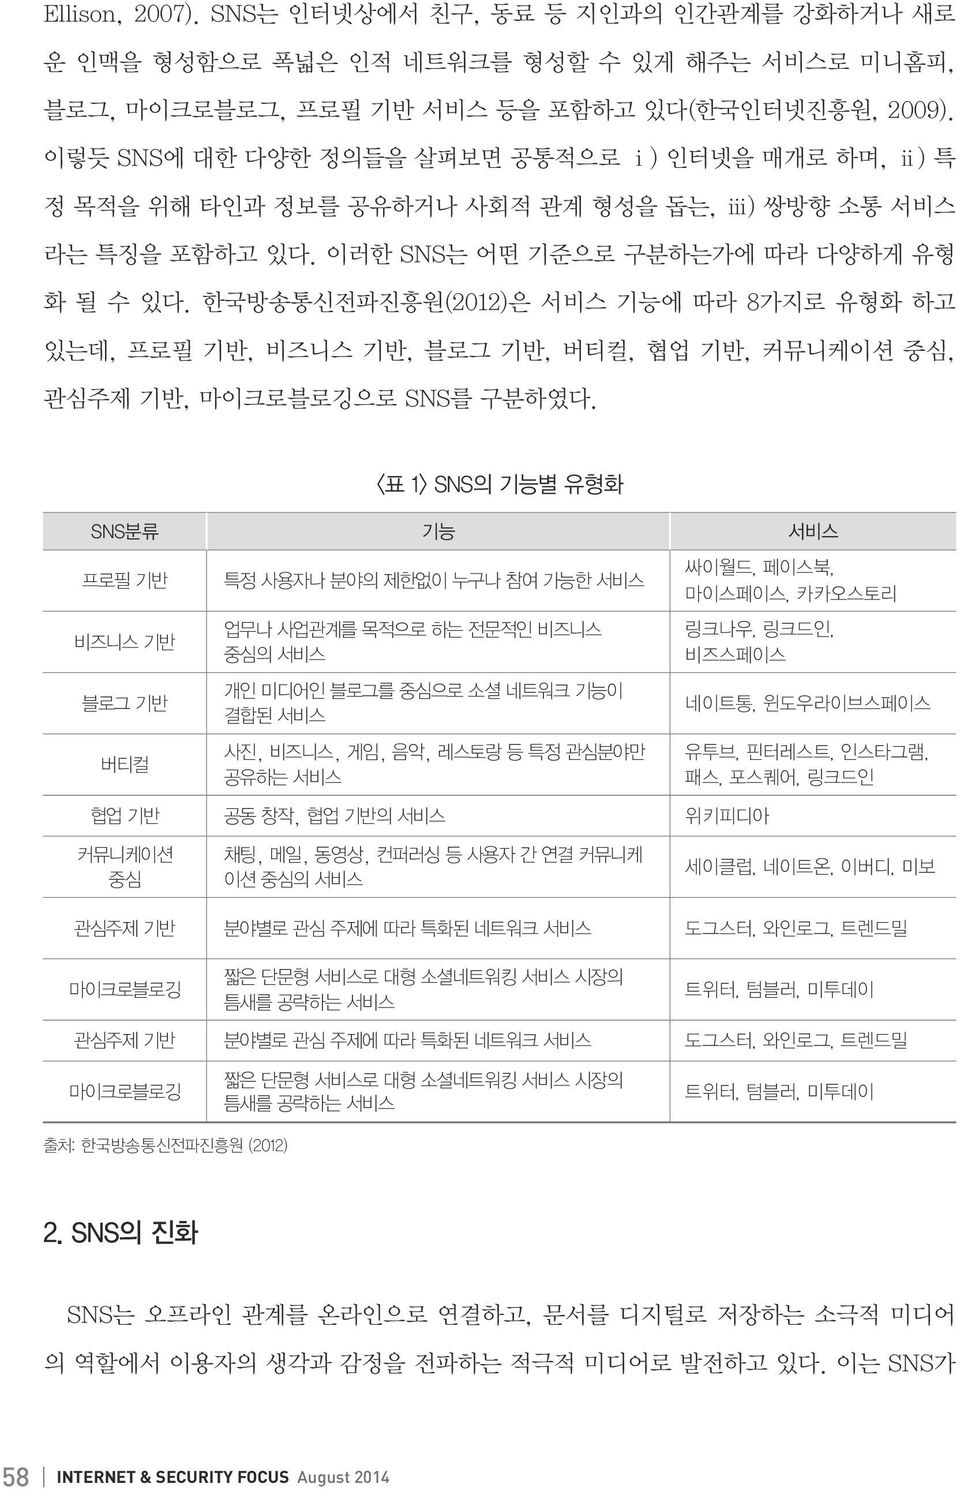 한국방송통신전파진흥원(2012)은 서비스 기능에 따라 8가지로 유형화 하고 있는데, 프로필 기반, 비즈니스 기반, 블로그 기반, 버티컬, 협업 기반, 커뮤니케이션 중심, 관심주제 기반, 마이크로블로깅으로 SNS를 구분하였다.